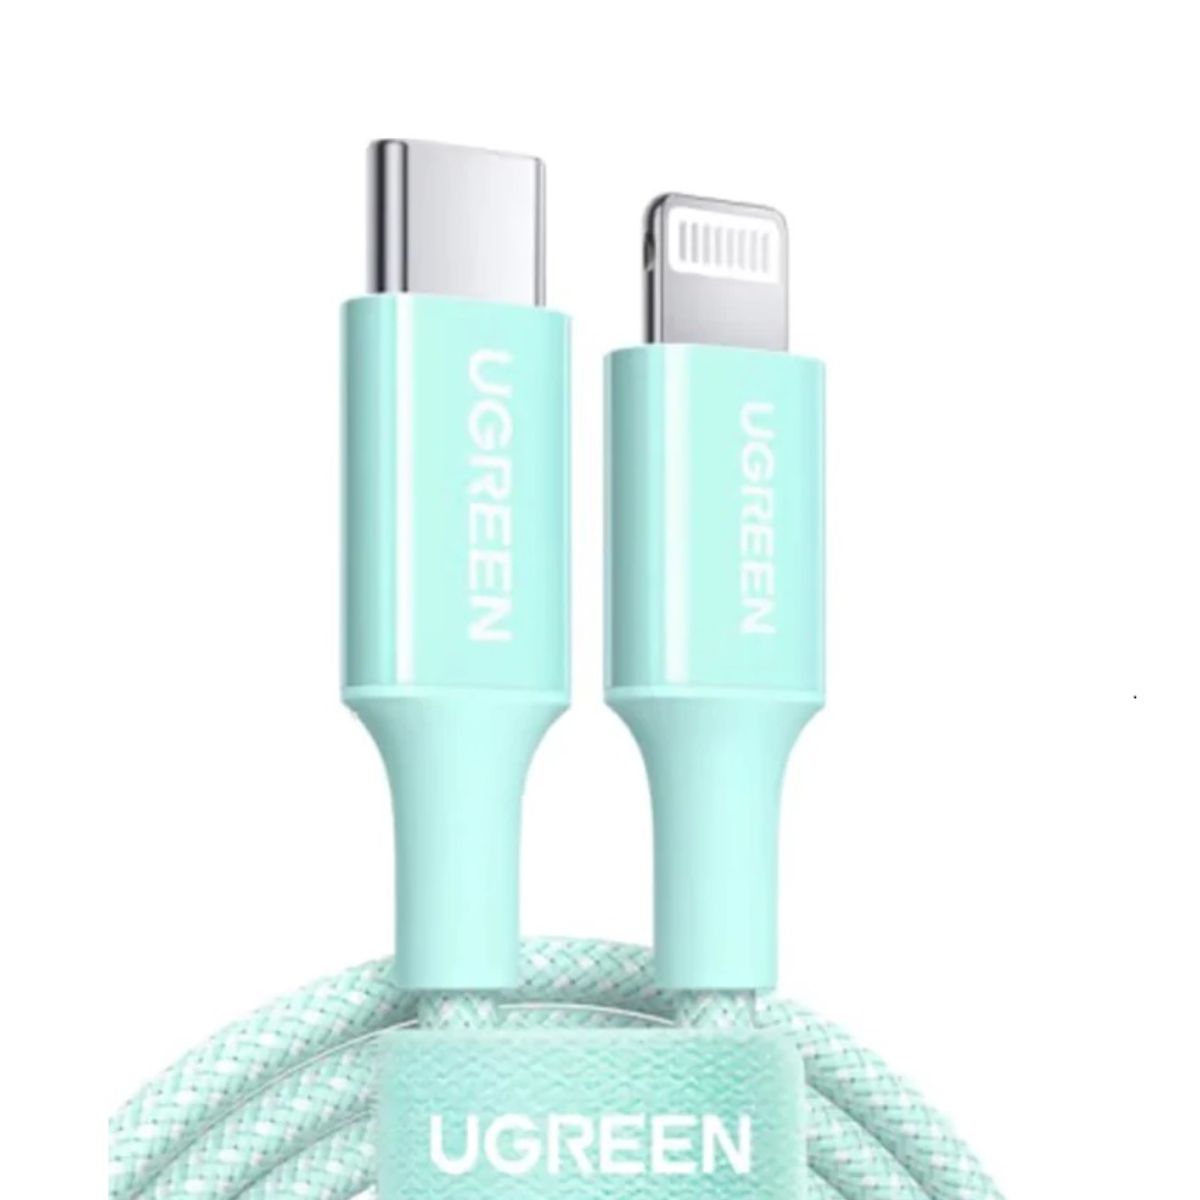 Cáp sạc 1m USB Lightning Ugreen 90449 US532 màu xanh lục, hỗ trợ sạc nhanh 3A, tốc độ 480Mbps